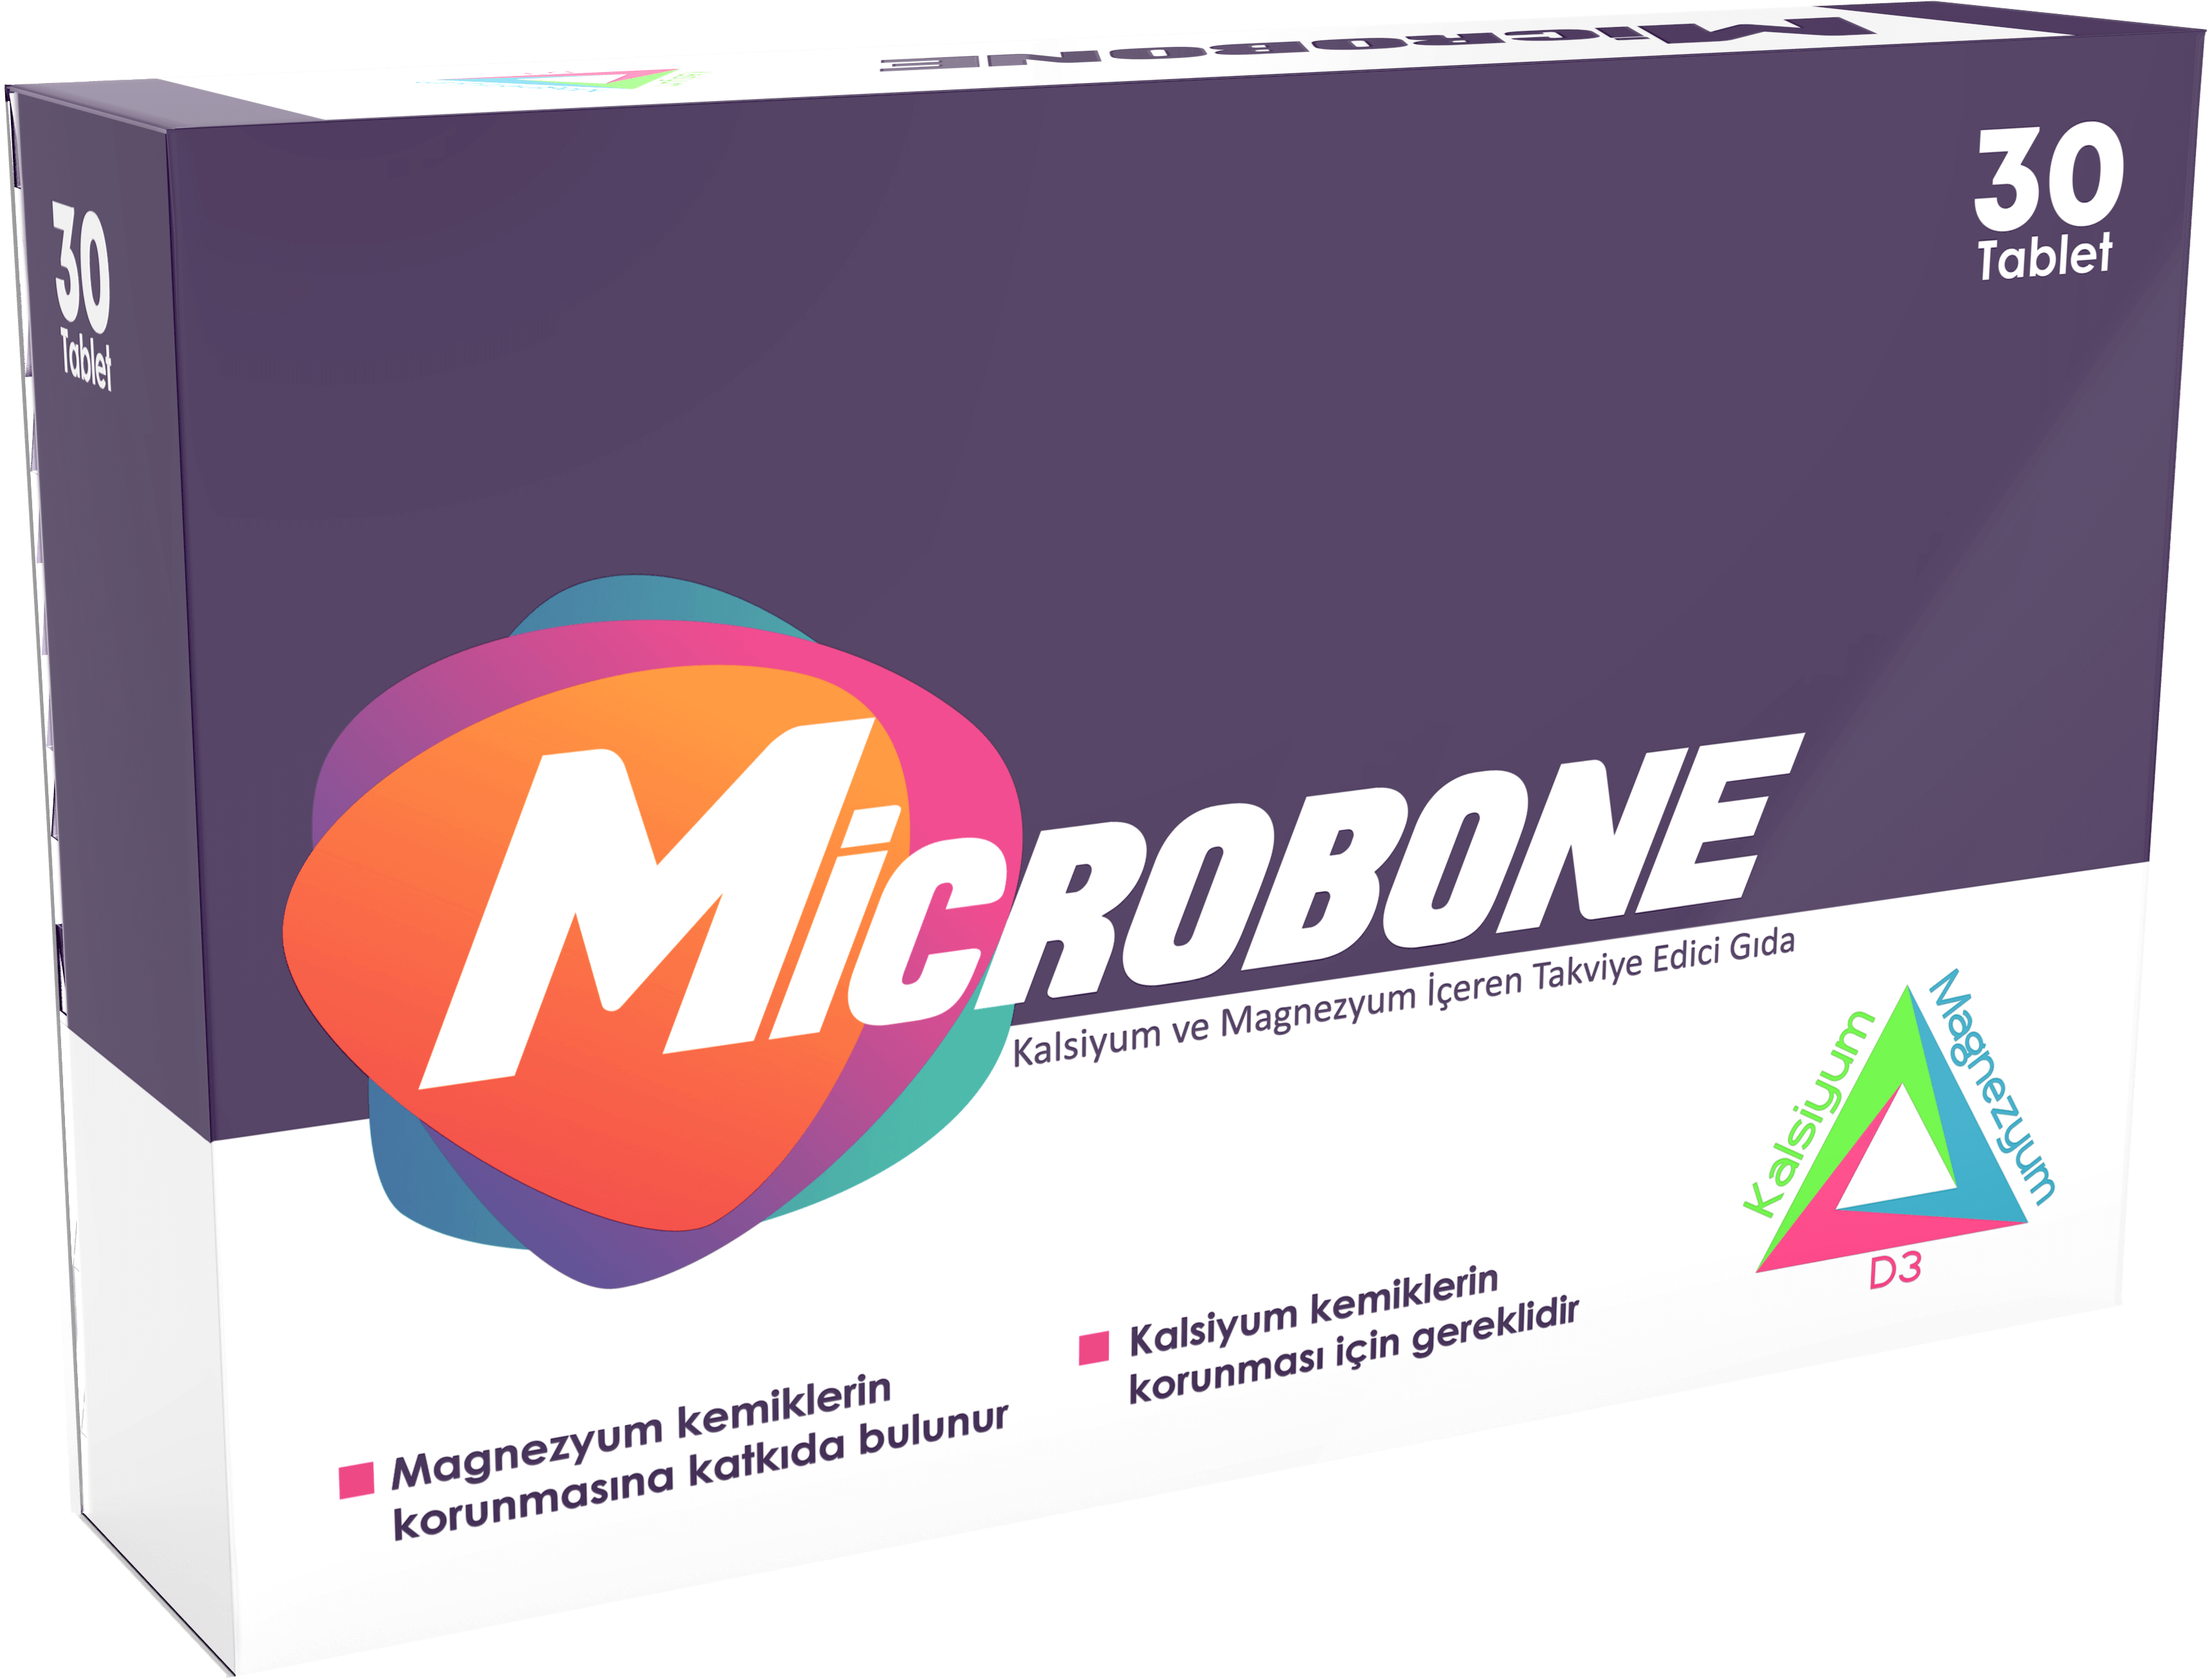 Microbone